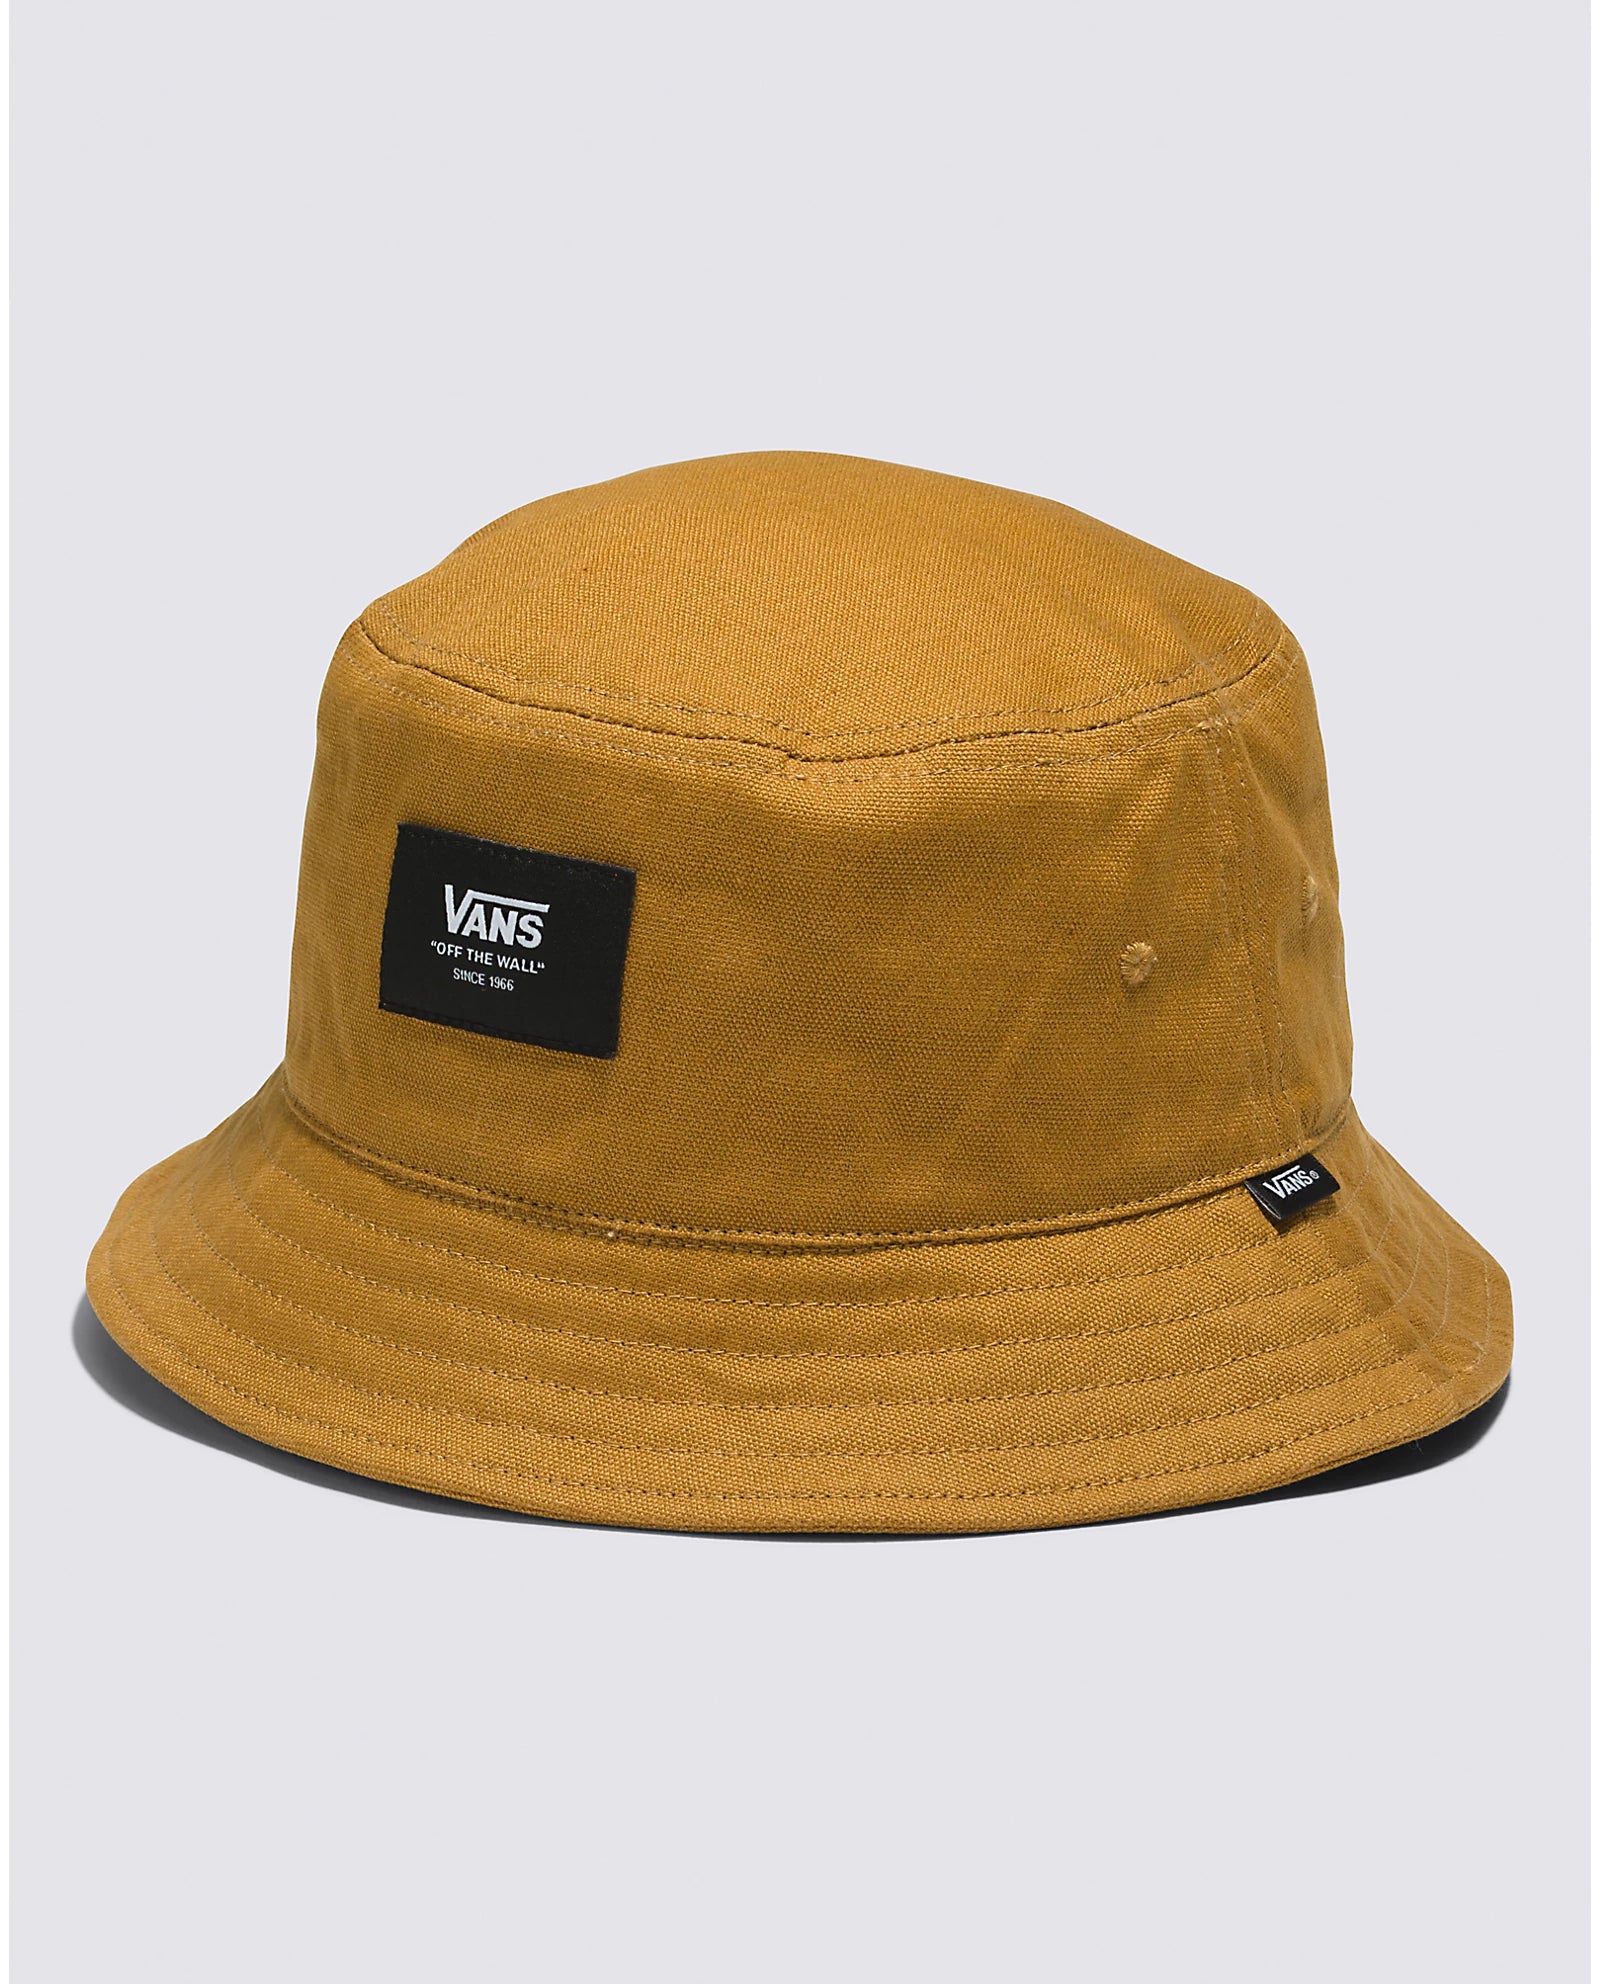 Vans Patch Bucket Hat Golden Brown